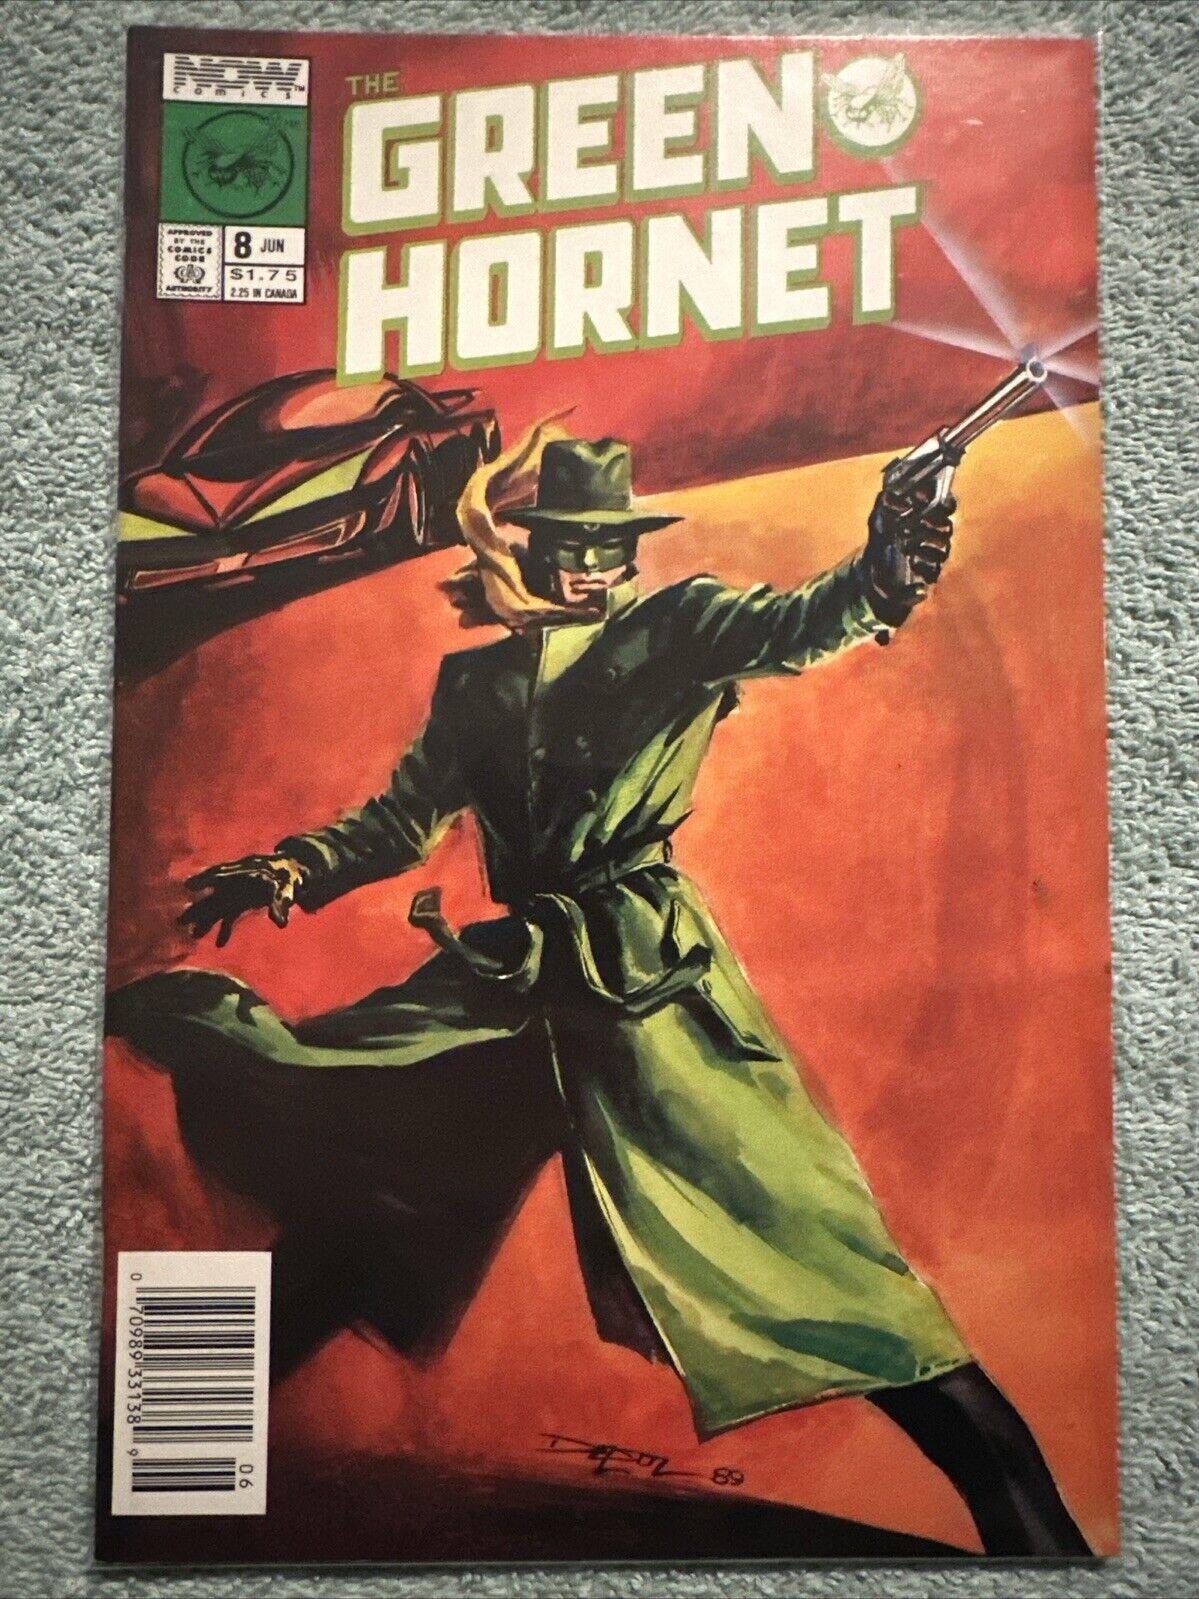 The Green Hornet #8 (NOW Comics June 1990)